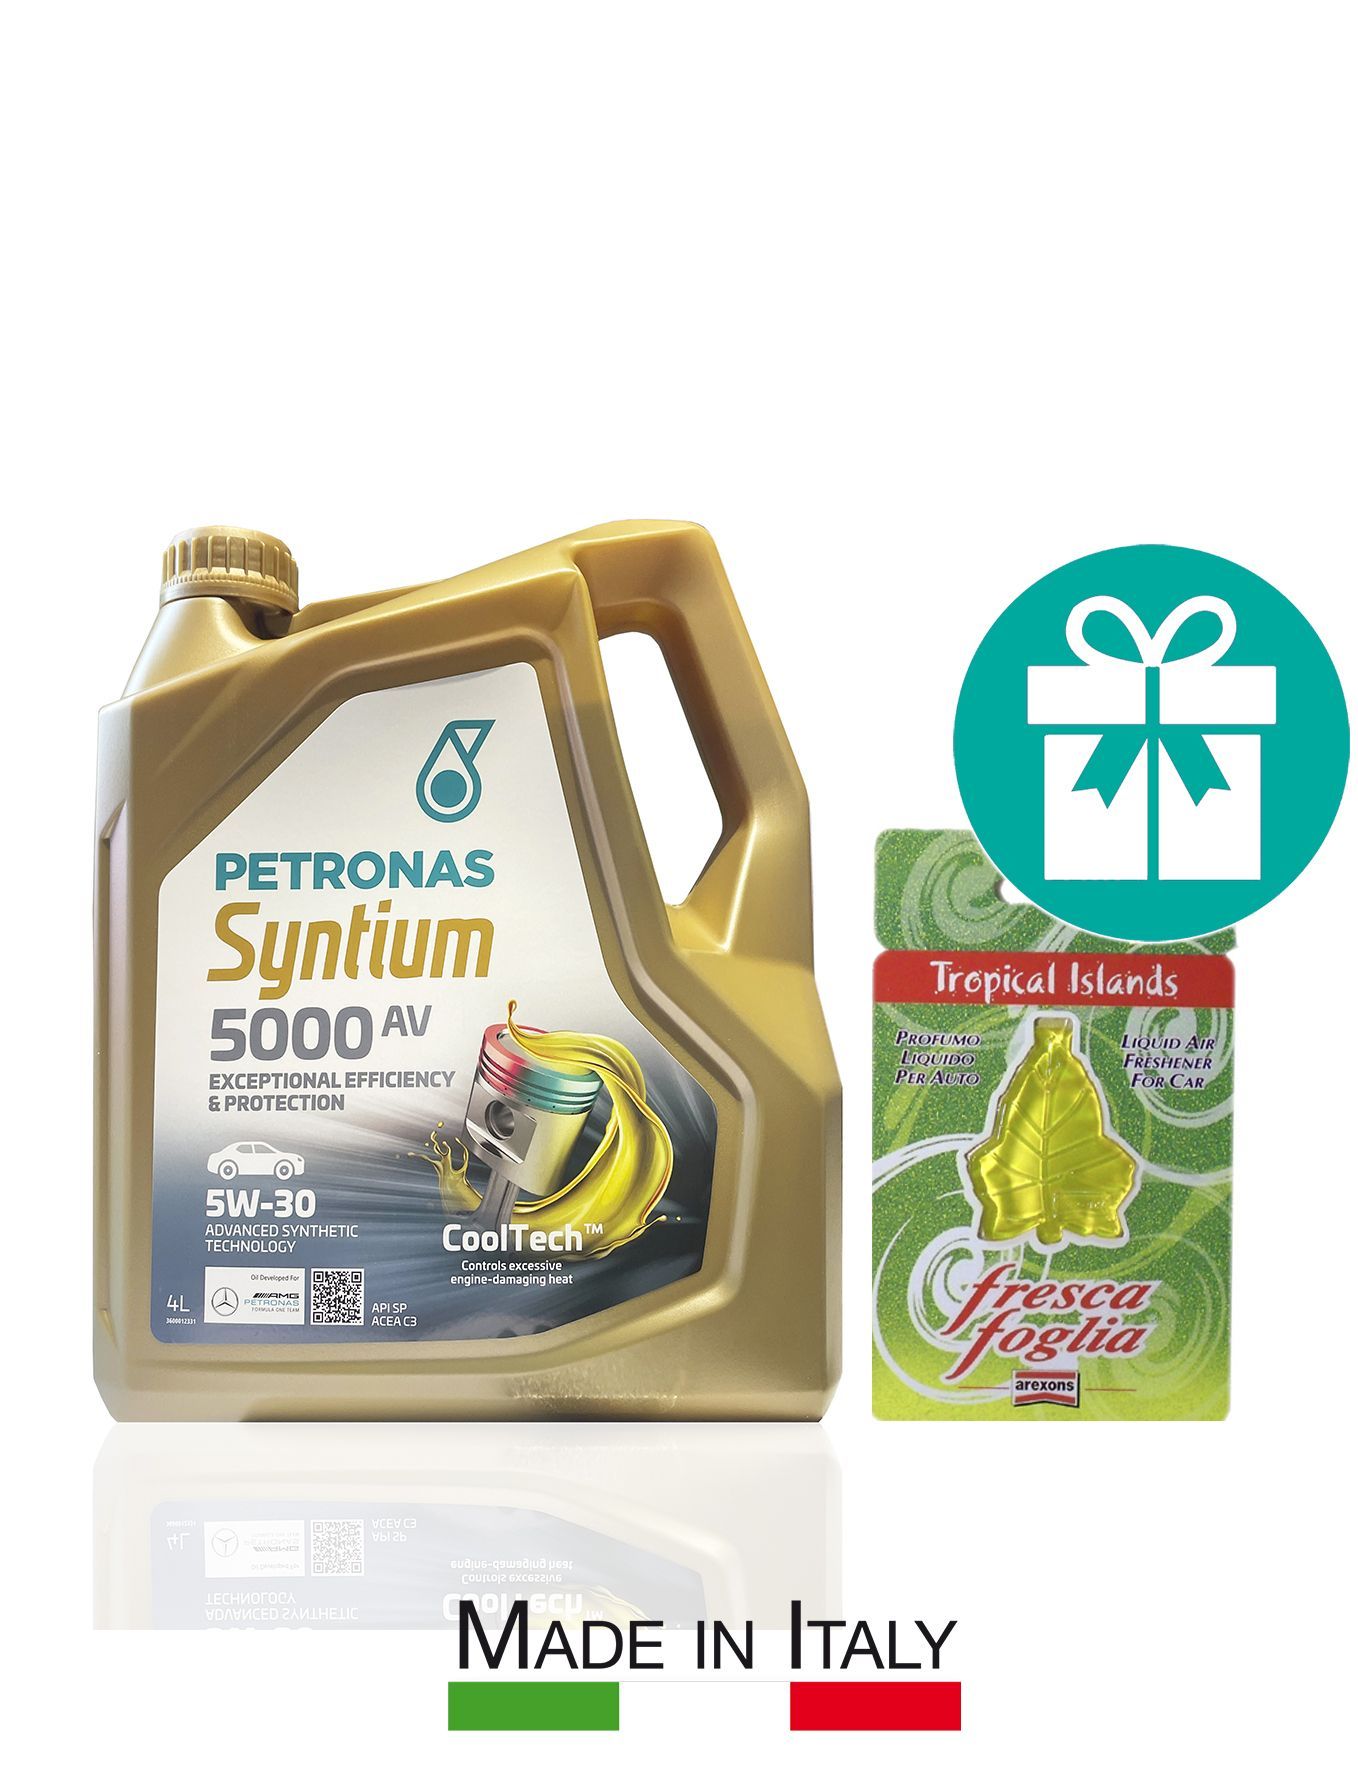 Petronas 5000 av. Petronas Syntium 5000 av 5w30 цены. Моторное масло Petronas Syntium 5000 av 5w30 20 л. Моторное масло Petronas Syntium 5000 av 5w30 60 л. Моторное масло Petronas Syntium 5000 av 5w30 4 л.